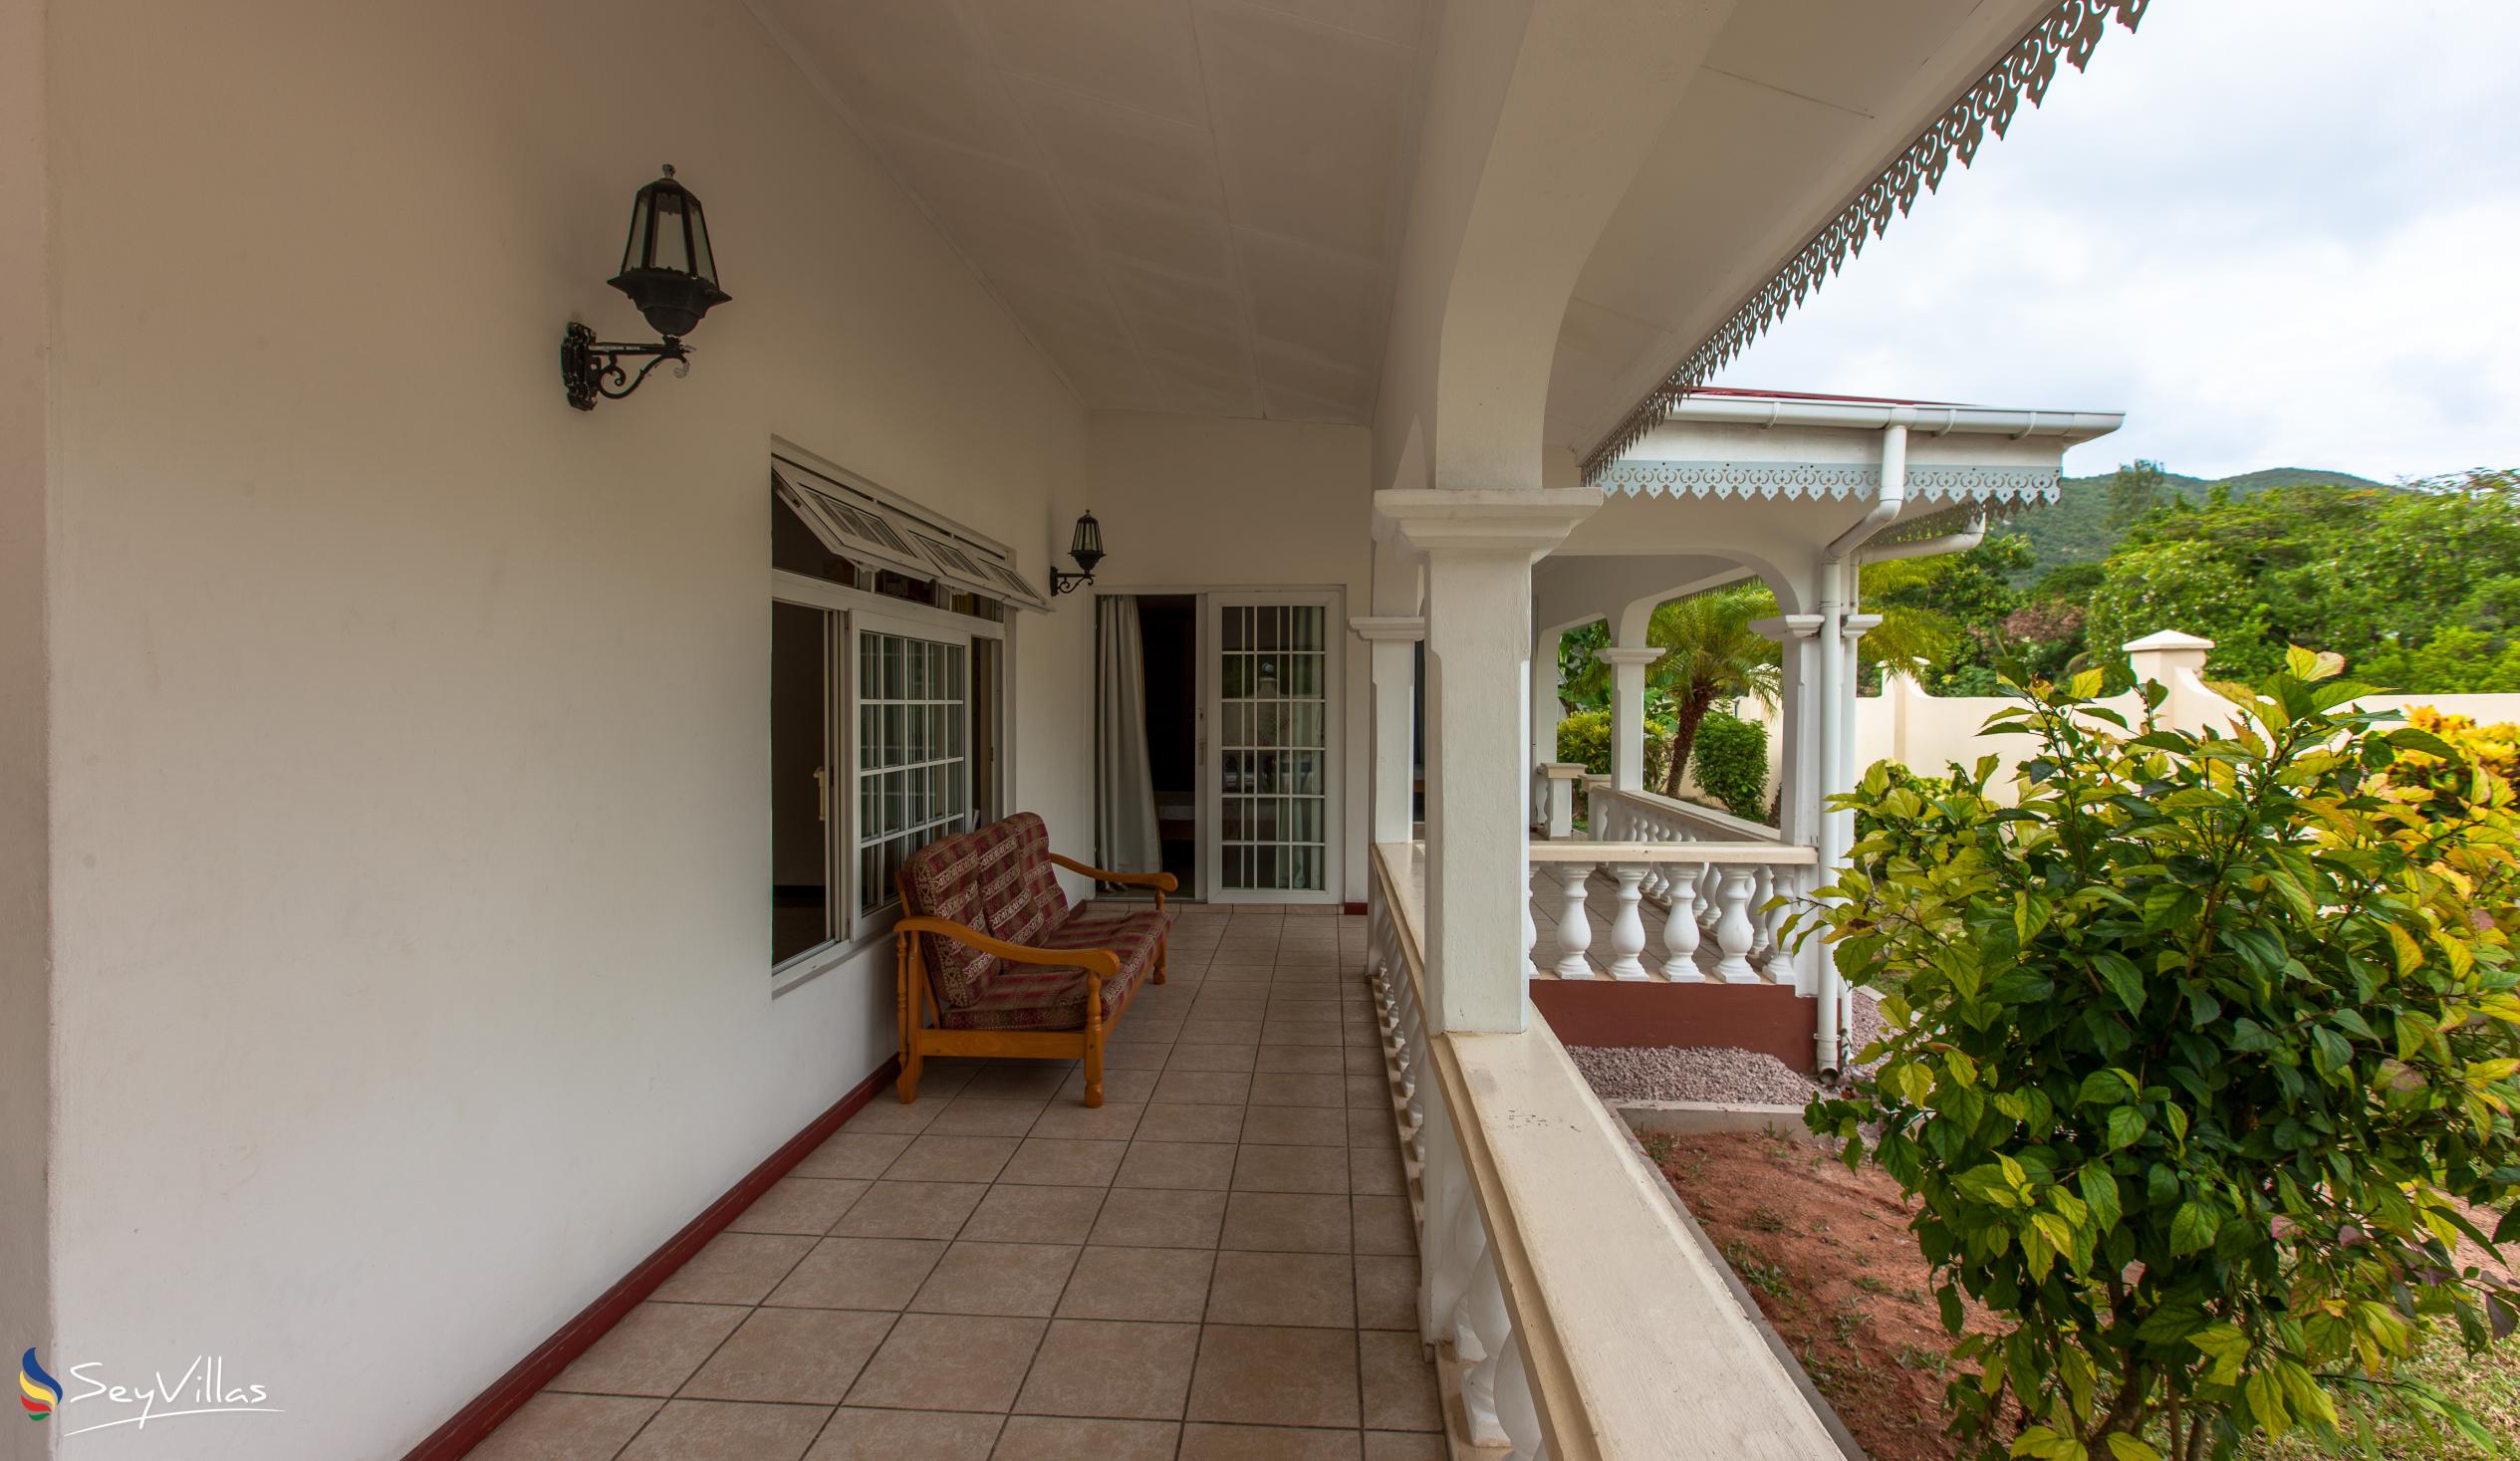 Foto 9: Villa Confort - Esterno - Praslin (Seychelles)